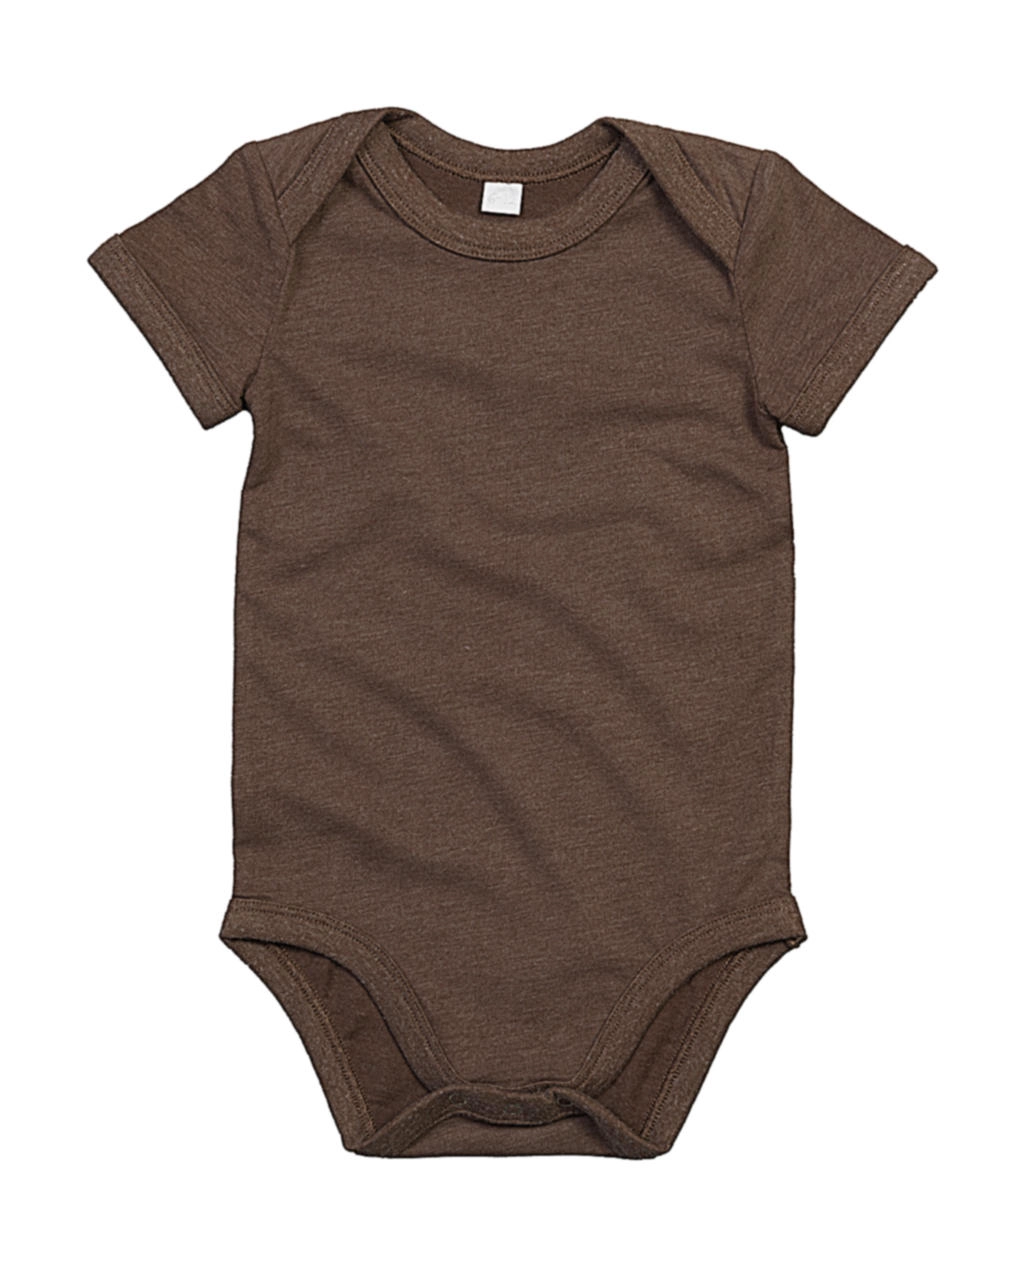 Baby Bodysuit zum Besticken und Bedrucken in der Farbe Mocha Organic mit Ihren Logo, Schriftzug oder Motiv.